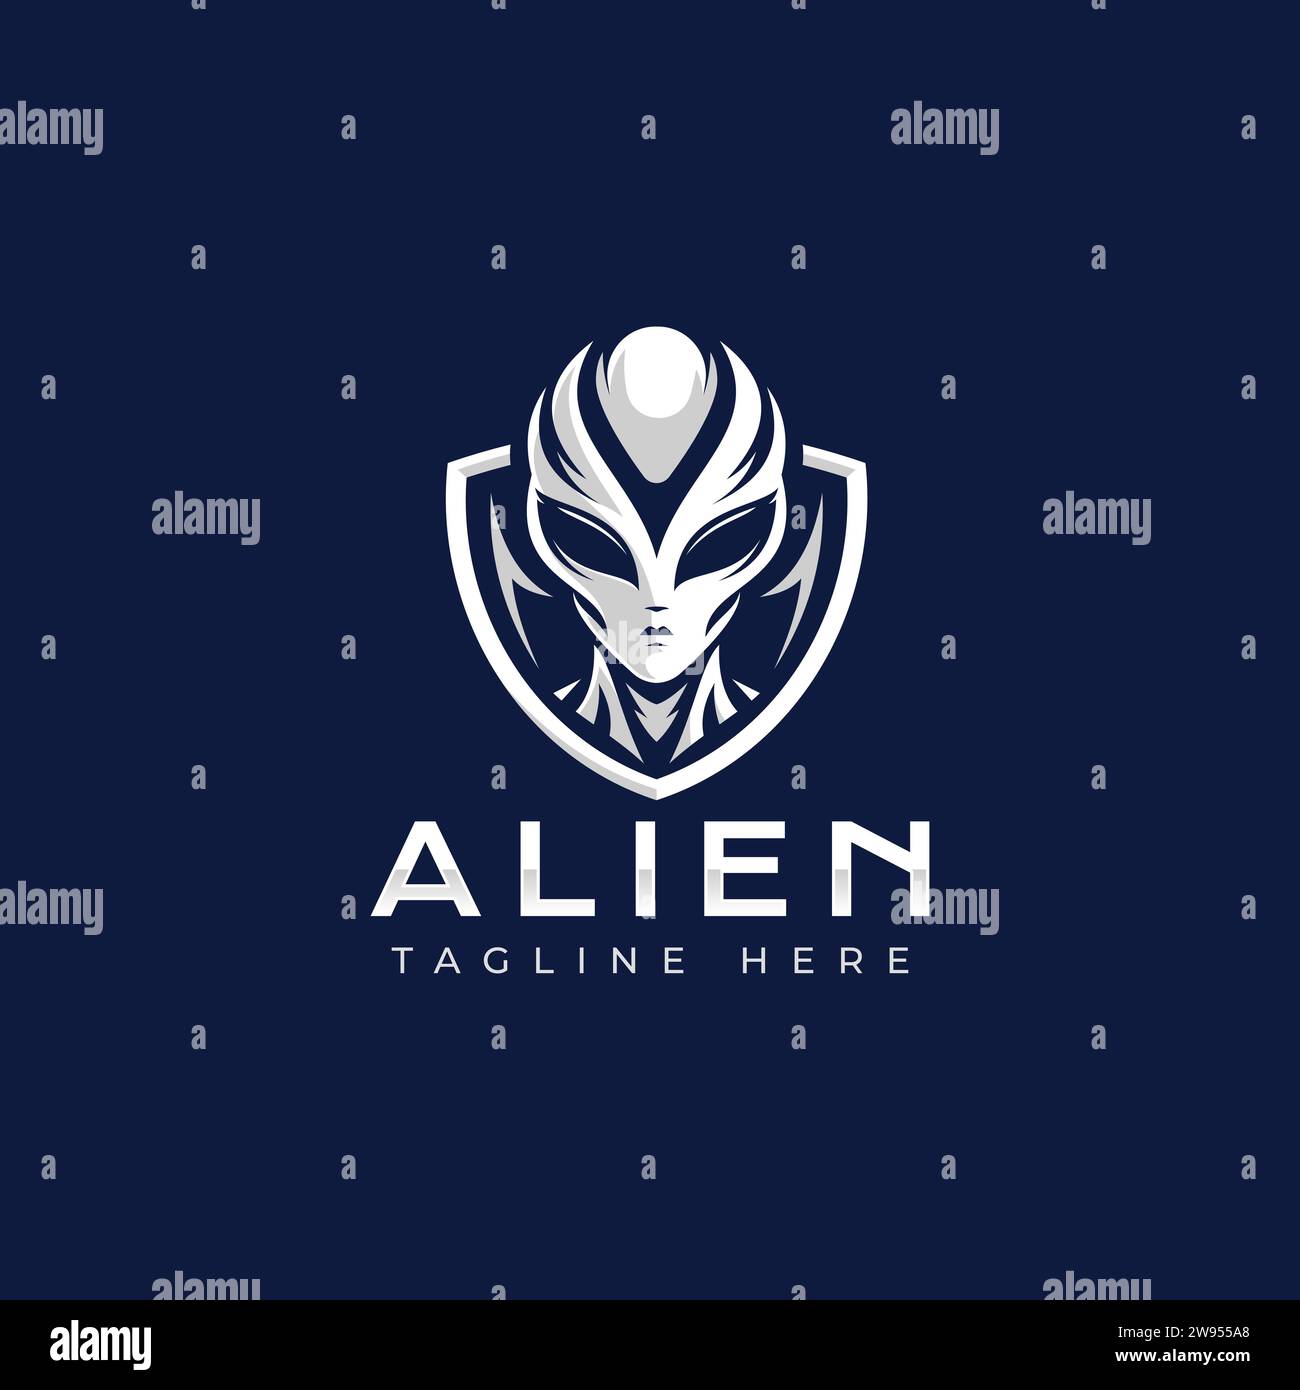 Illustrazione del logo Alien Vector. Logo alieno minimale su sfondo blu scuro. Illustrazione Vettoriale